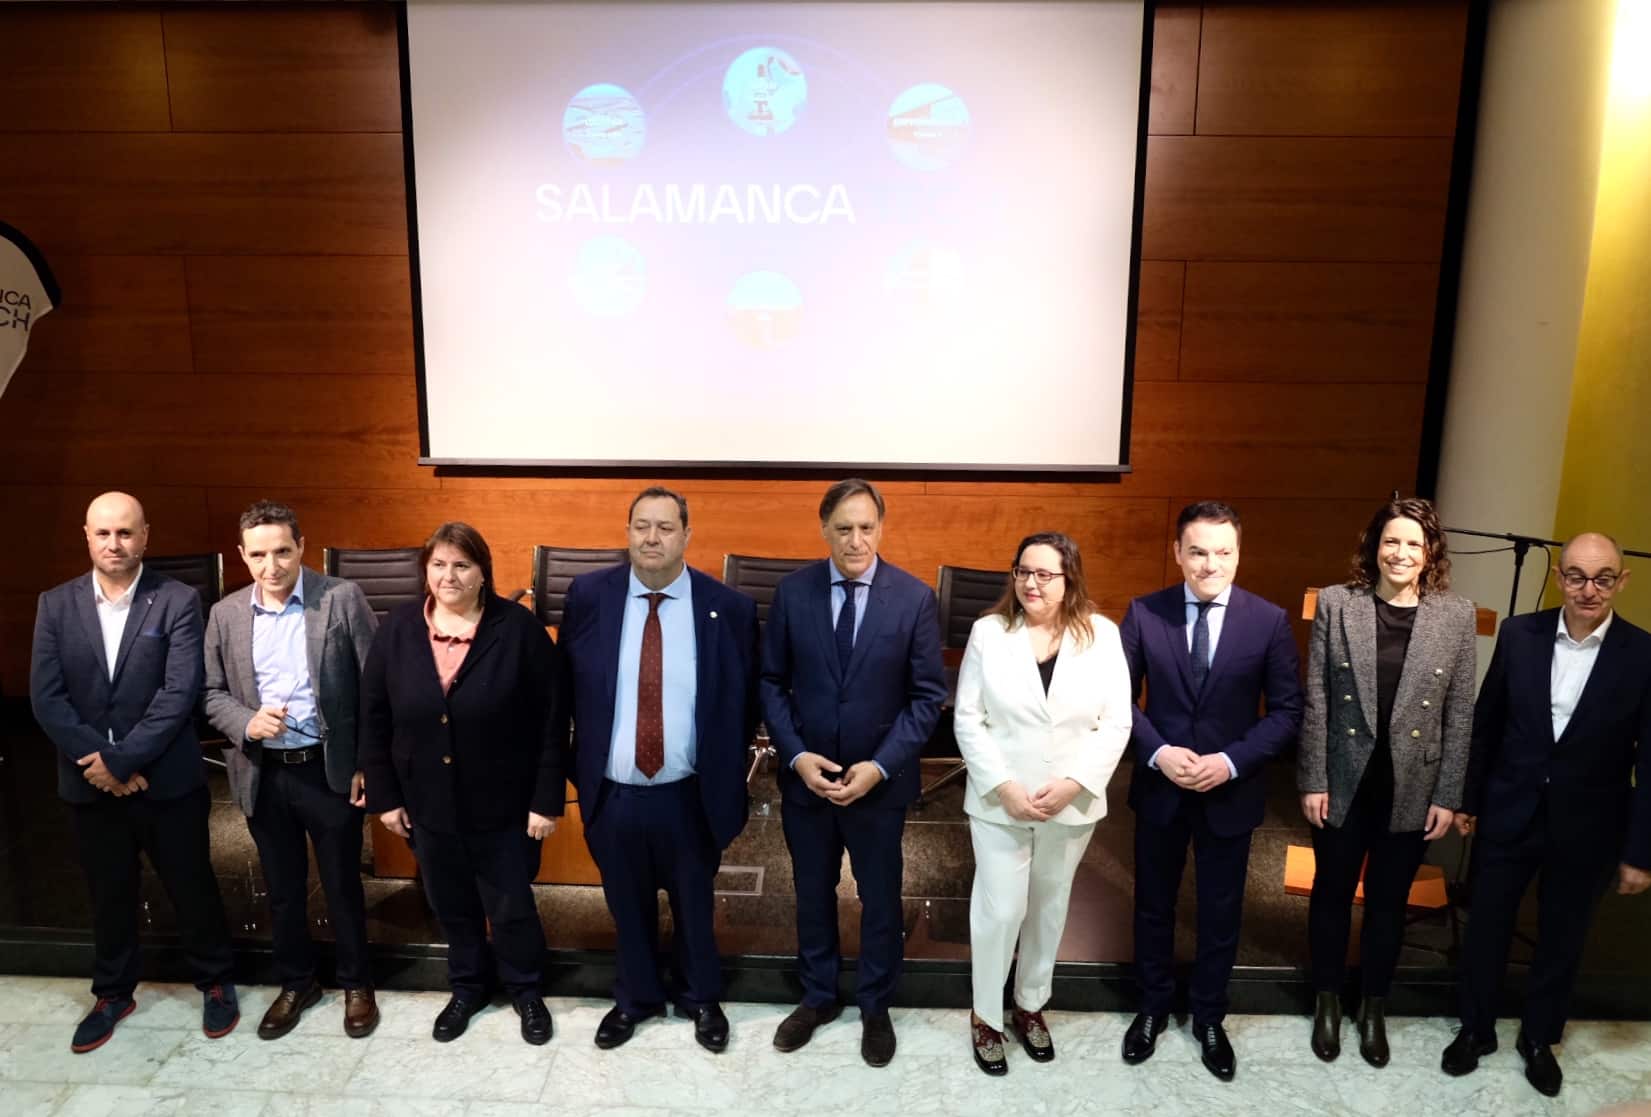 Salamanca se presenta a las empresas como referente en innovación y biotecnología